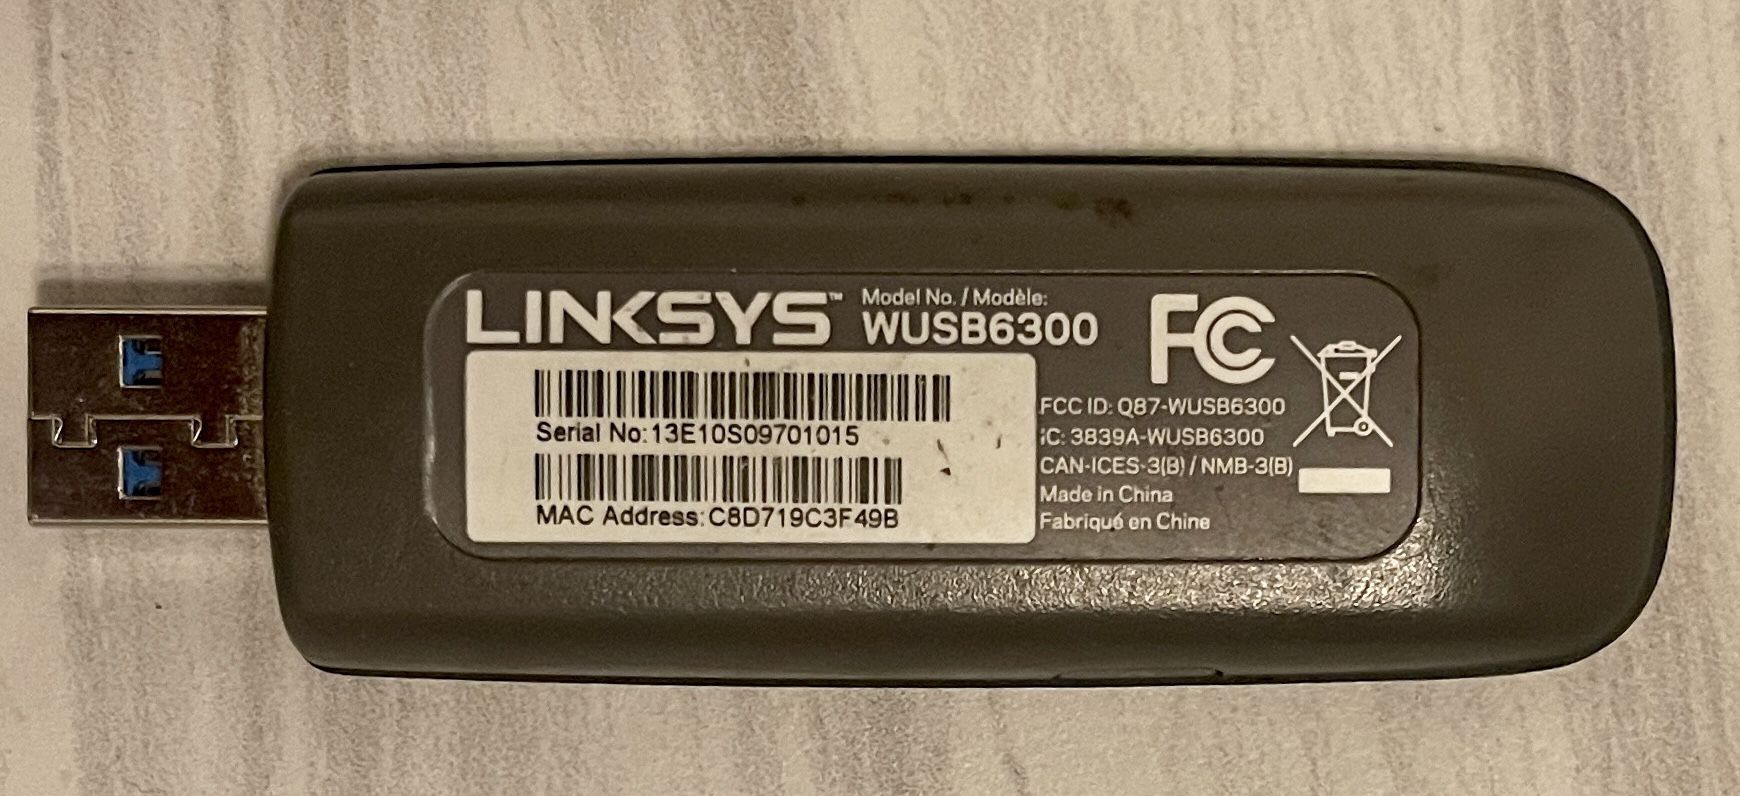 Linksys WUSB6300 Dual-Band AC1200 Wireless USB 3.0 WIFI Adapter Fast 5ghz